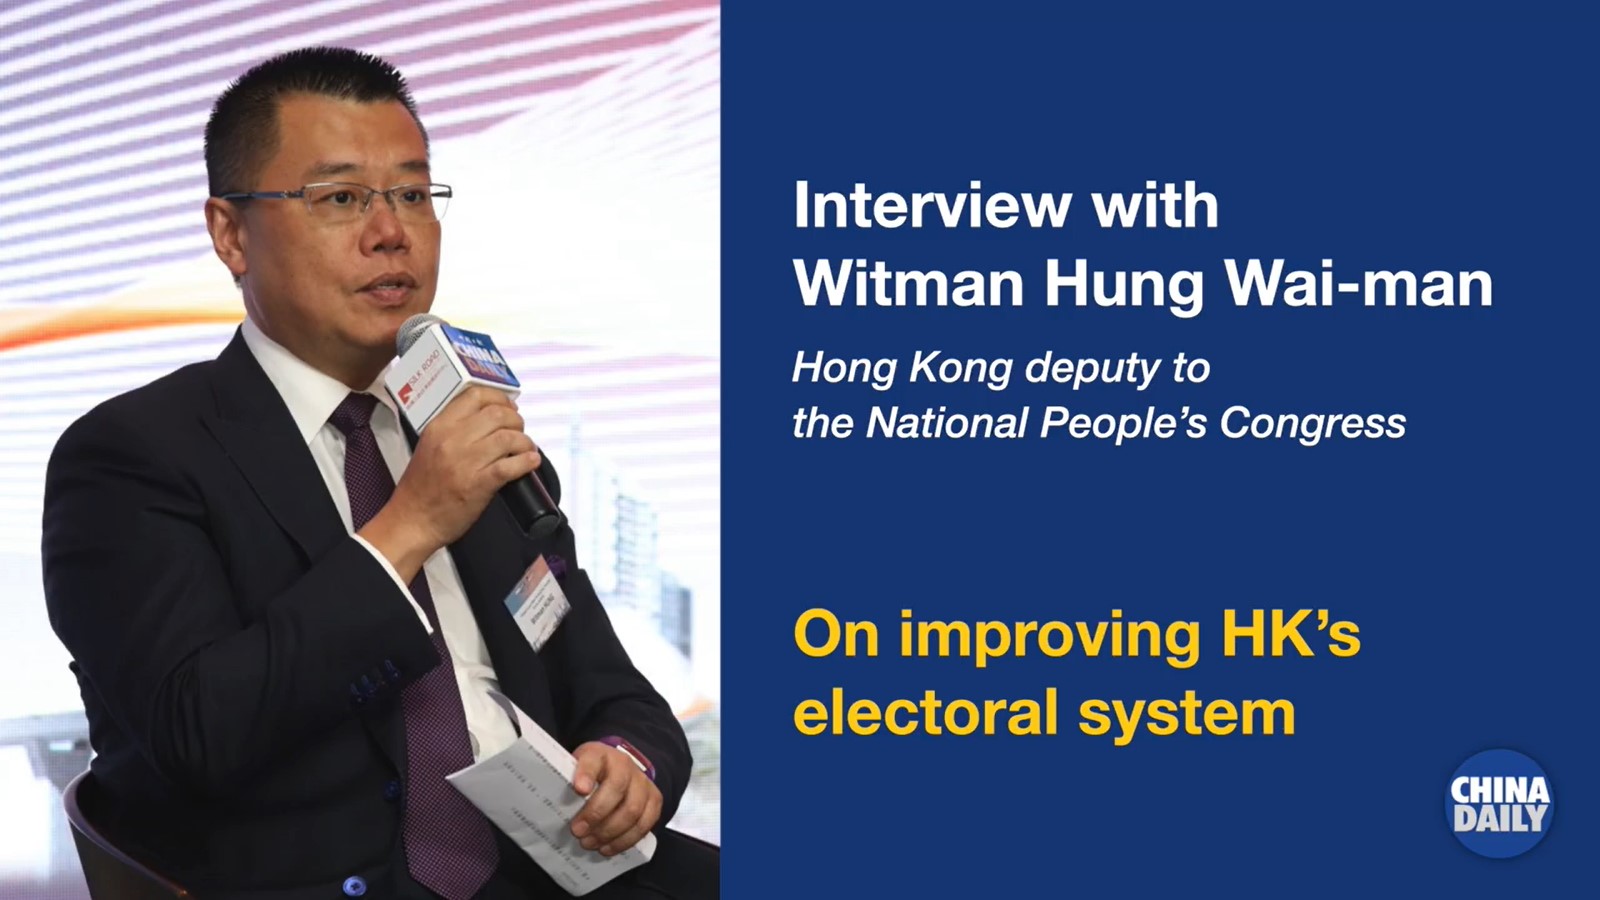 Improving HK’s electoral system